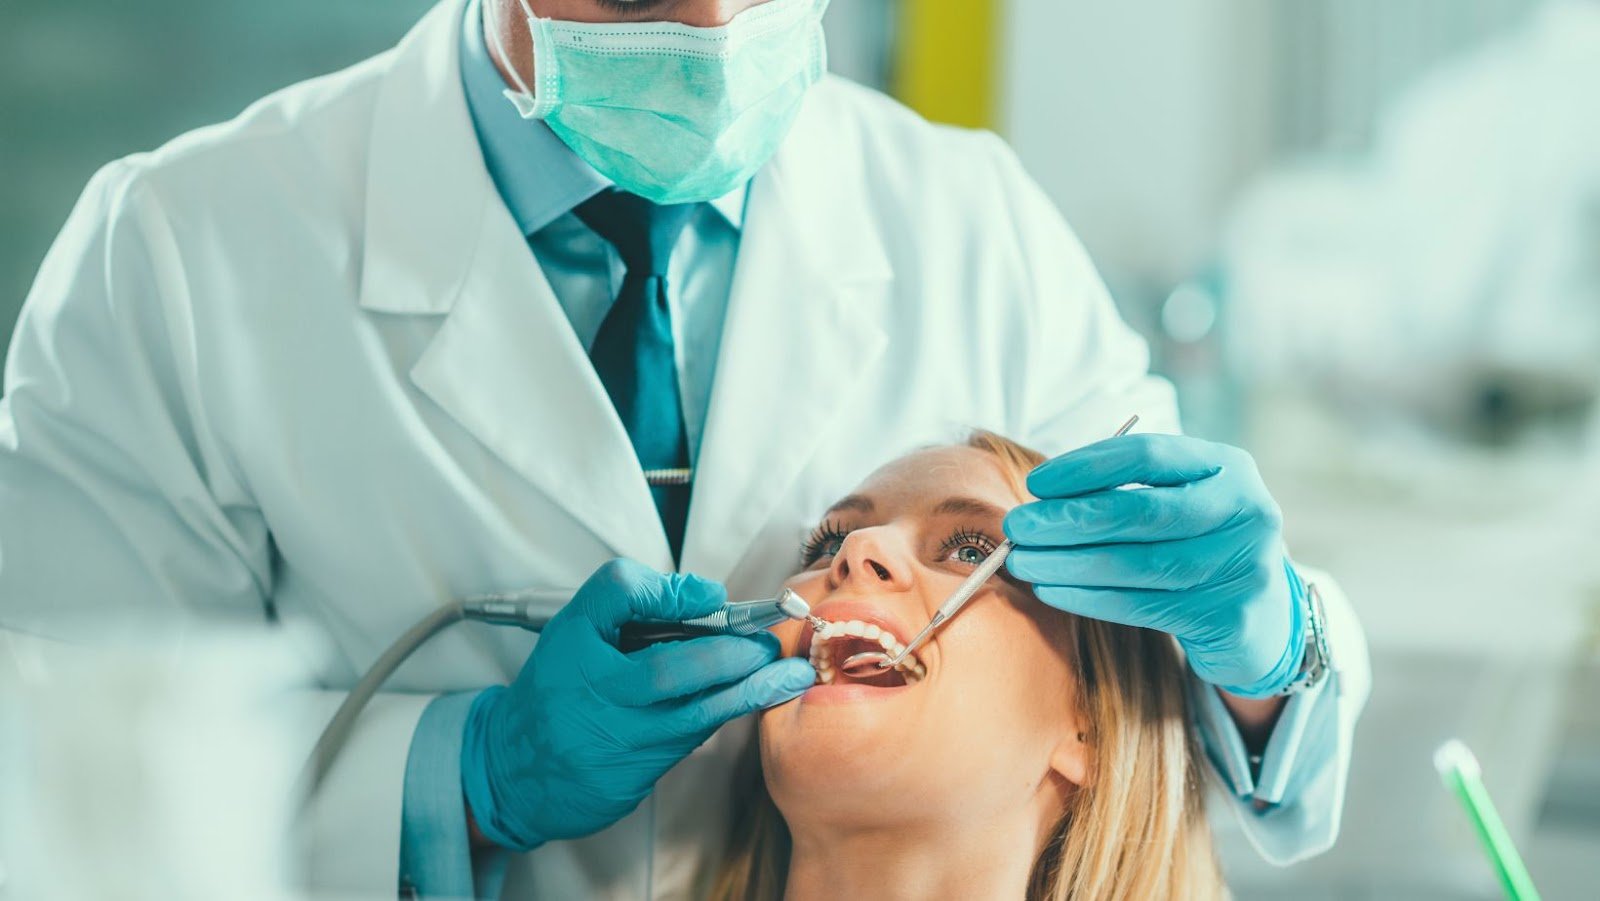 Procedures Used In General Dentistry